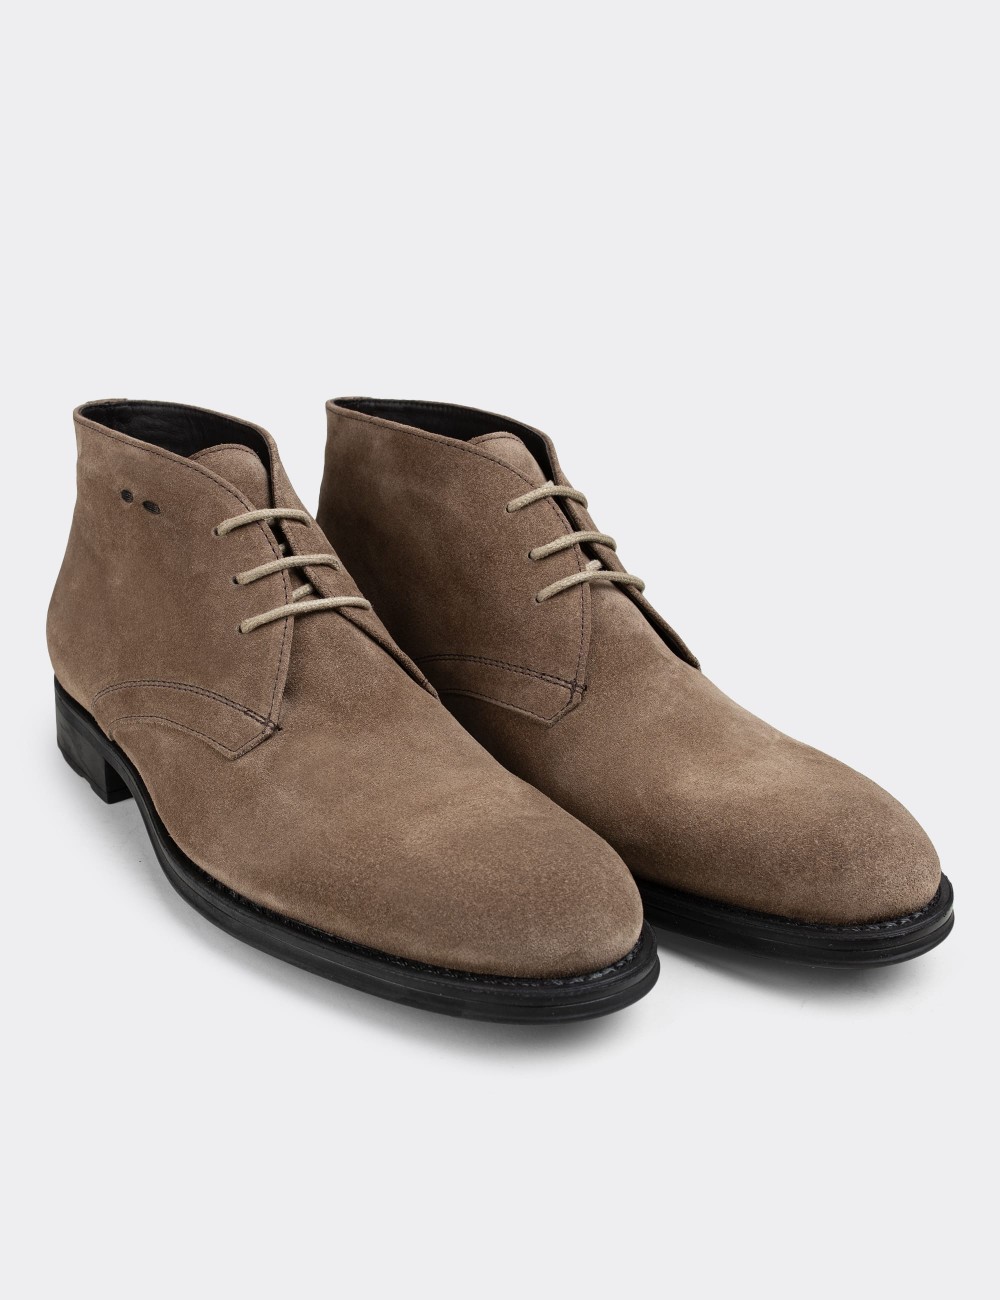 Sandstone Suede Leather Desert Boots - 01295MVZNC01